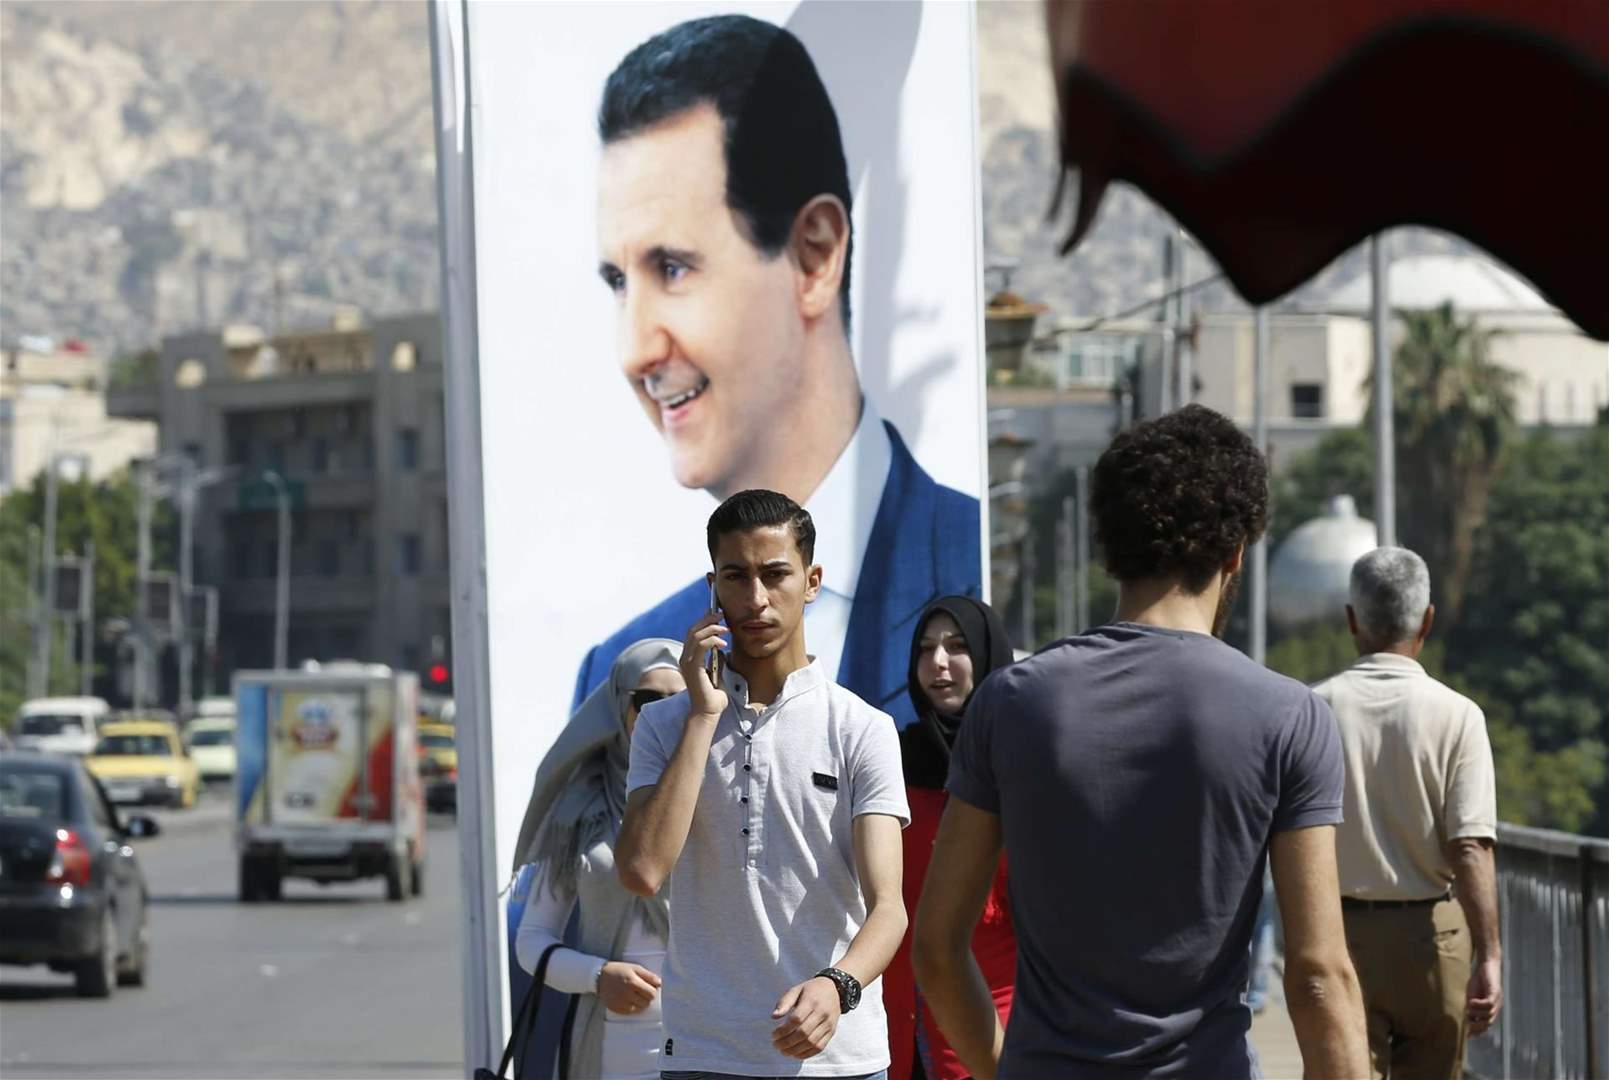 تفاهم روسي- تركي على إجراء انتخابات رئاسية مبكرة في سوريا؟!